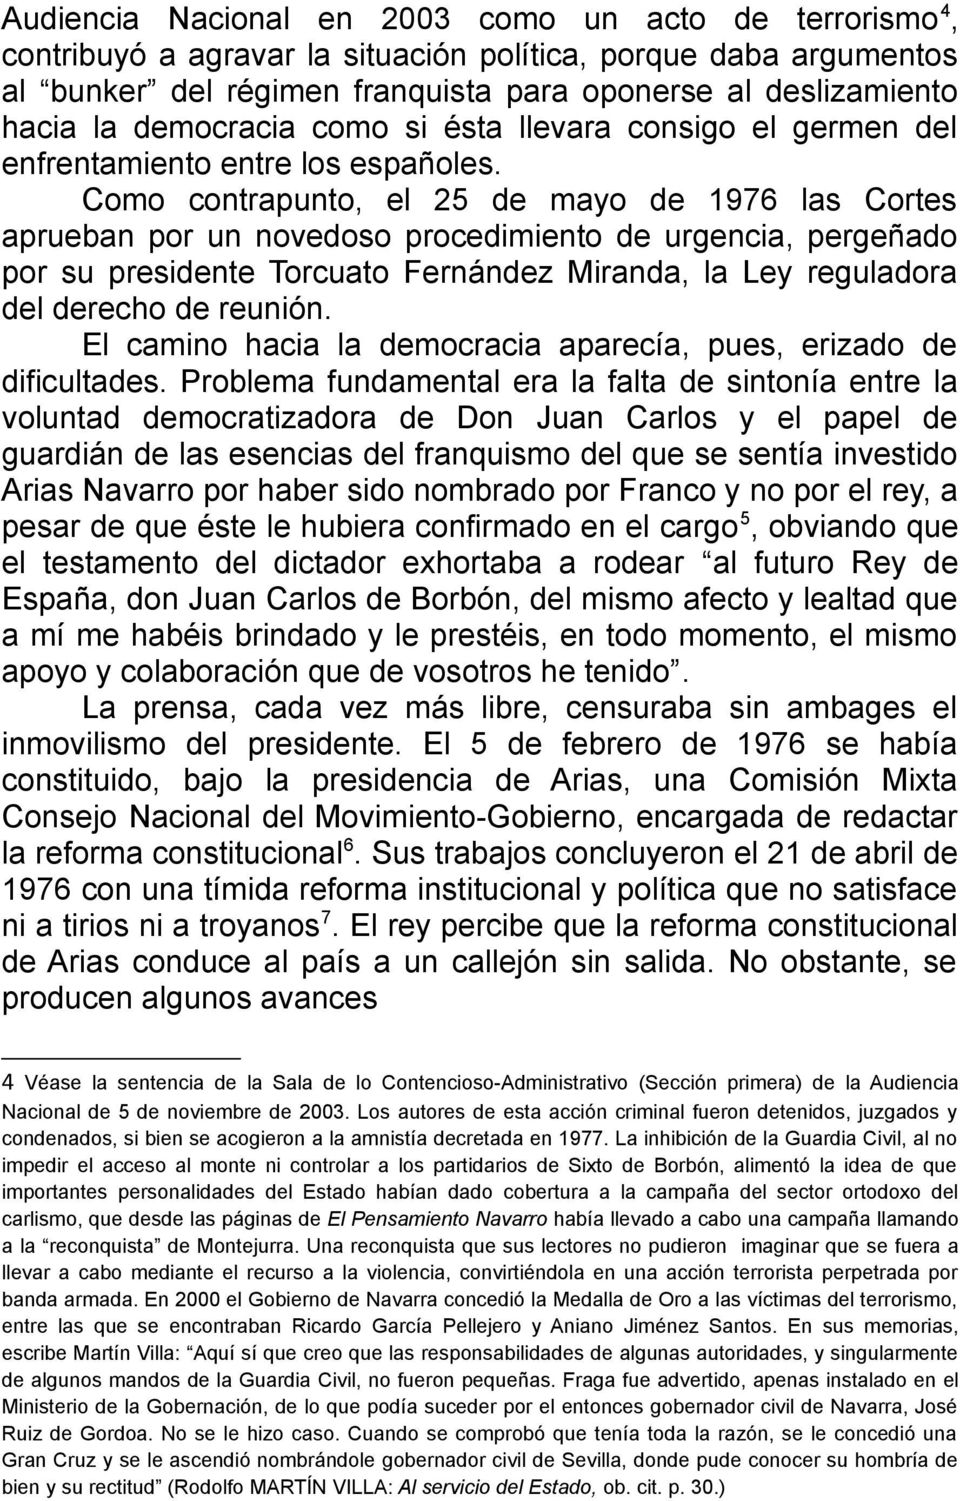 Como contrapunto, el 25 de mayo de 1976 las Cortes aprueban por un novedoso procedimiento de urgencia, pergeñado por su presidente Torcuato Fernández Miranda, la Ley reguladora del derecho de reunión.